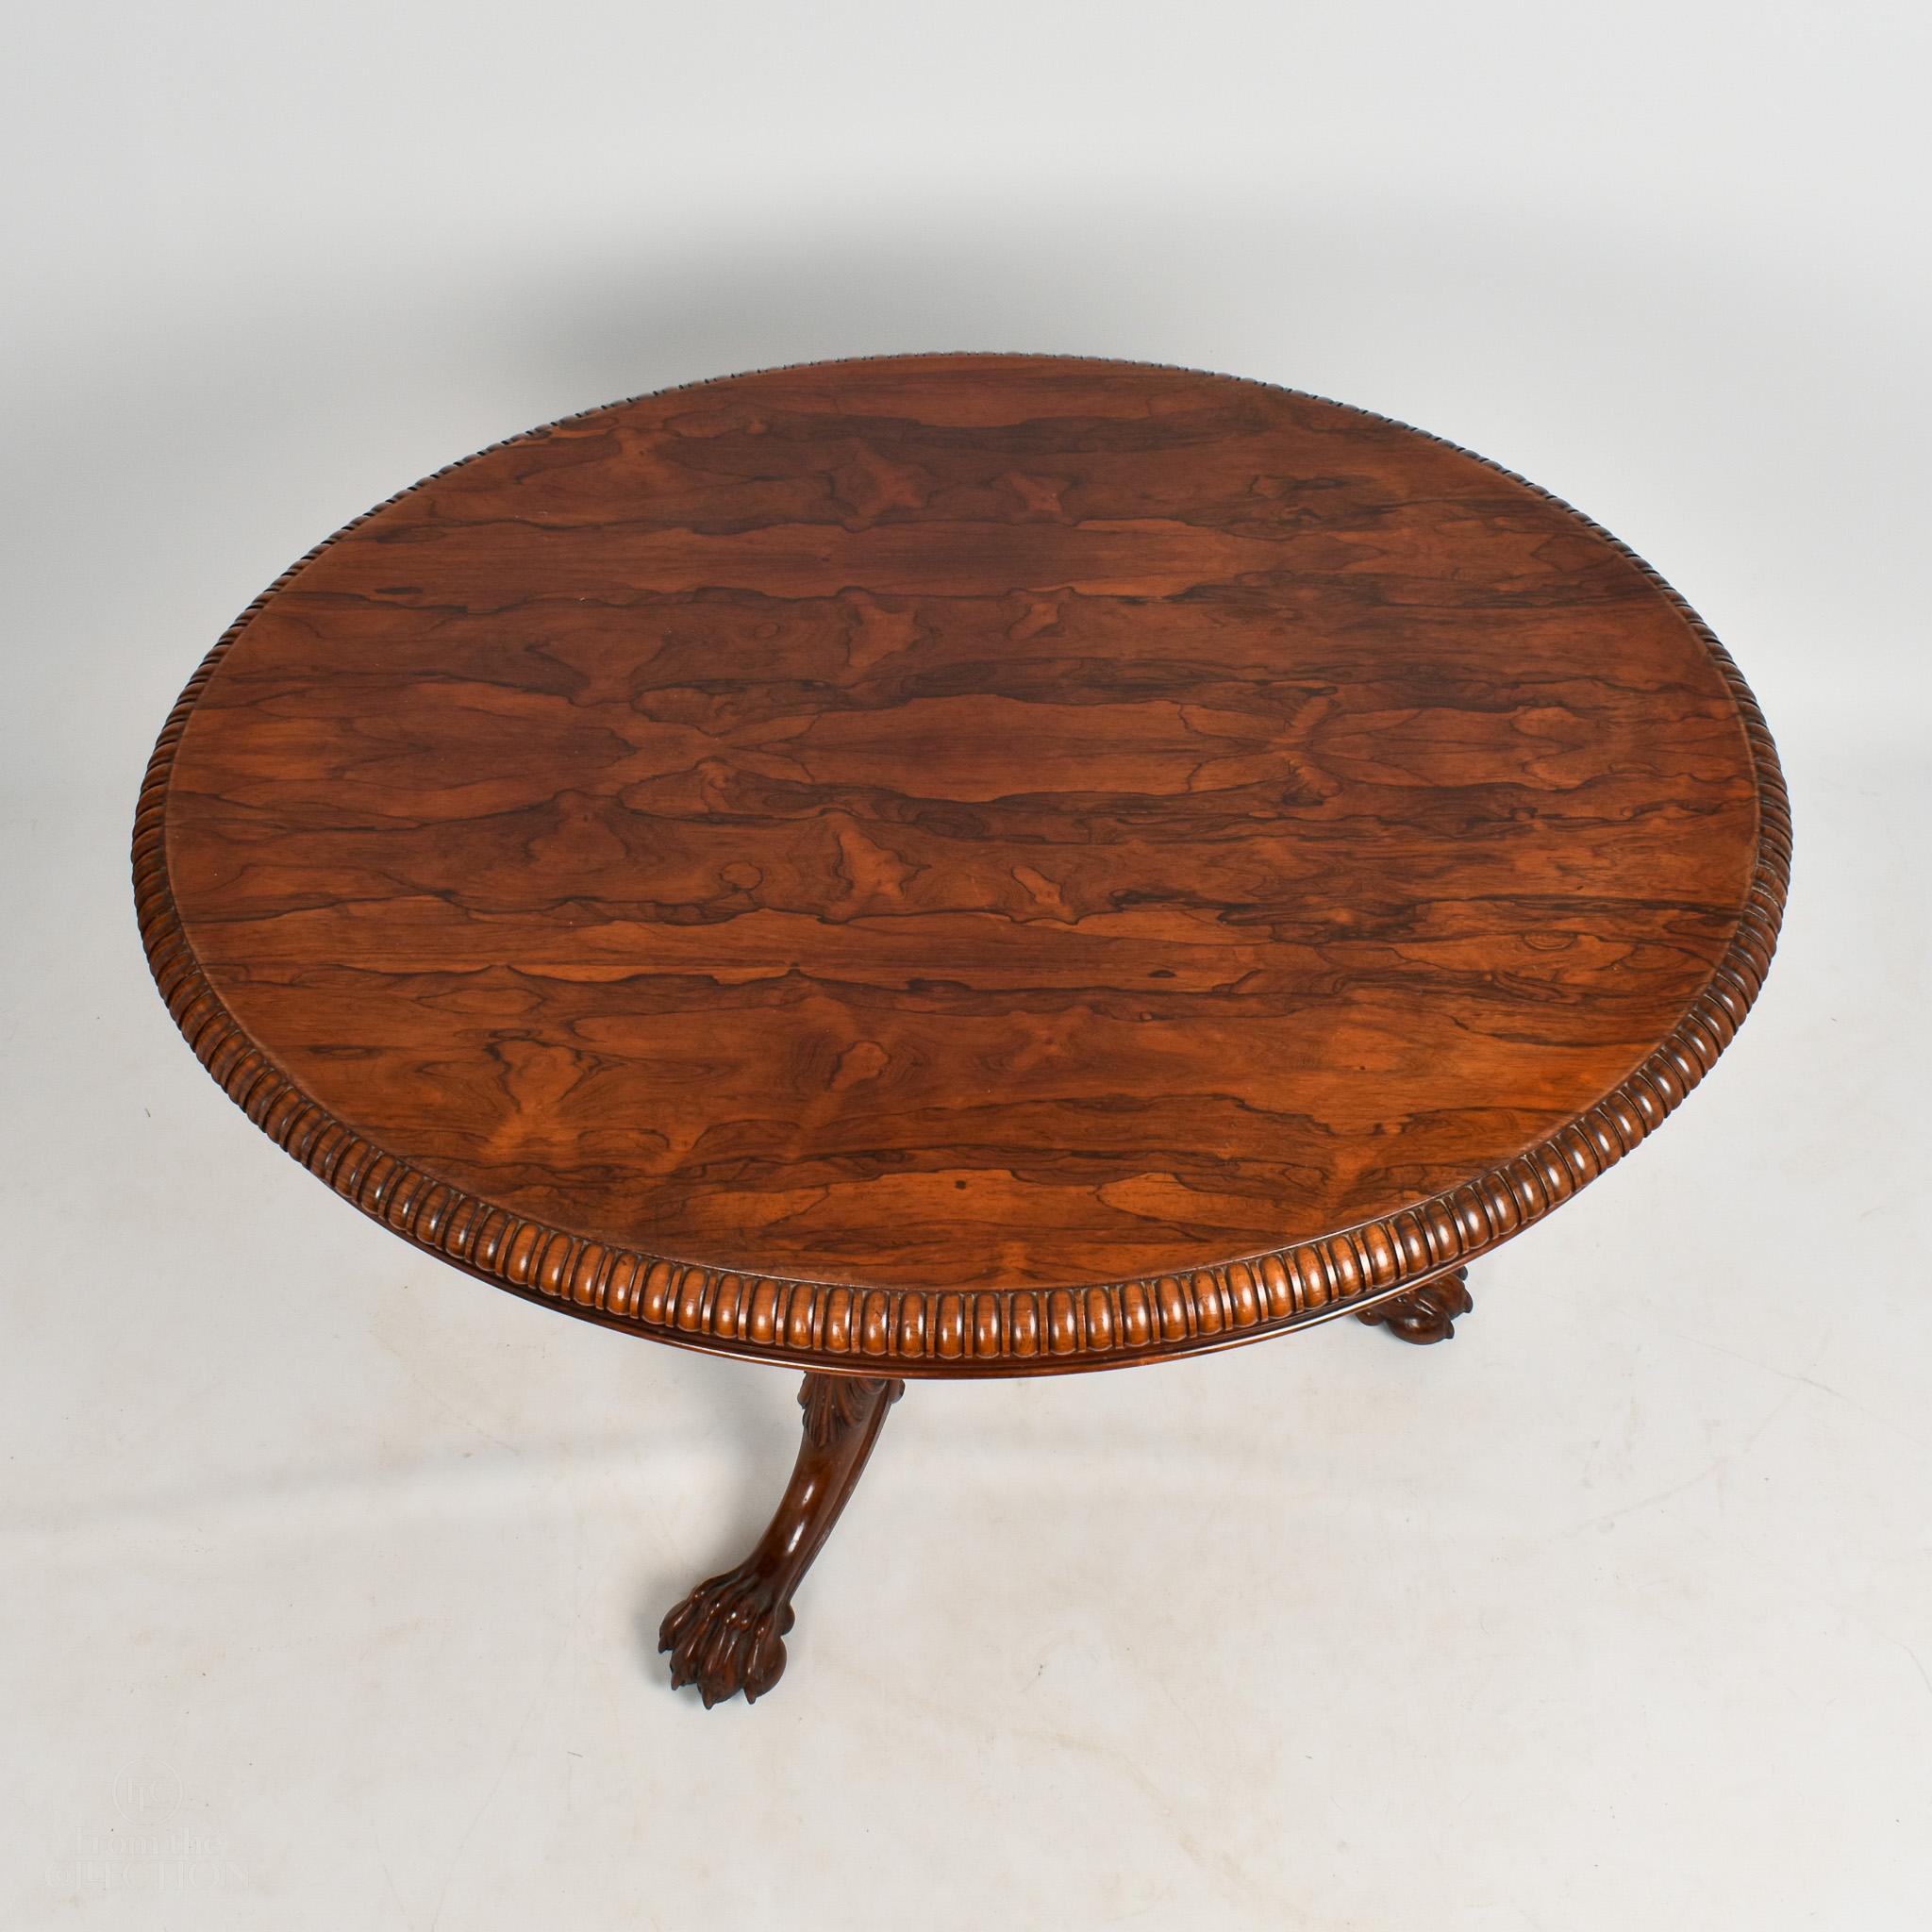 Cette superbe table centrale ovale en bois de rose (vers 1840) est fabriquée dans un beau bois foncé et est en excellent état. Estampillé Gillows et doté d'une belle bordure sculptée à godrons. Le piédestal central repose sur trois pieds évasés avec